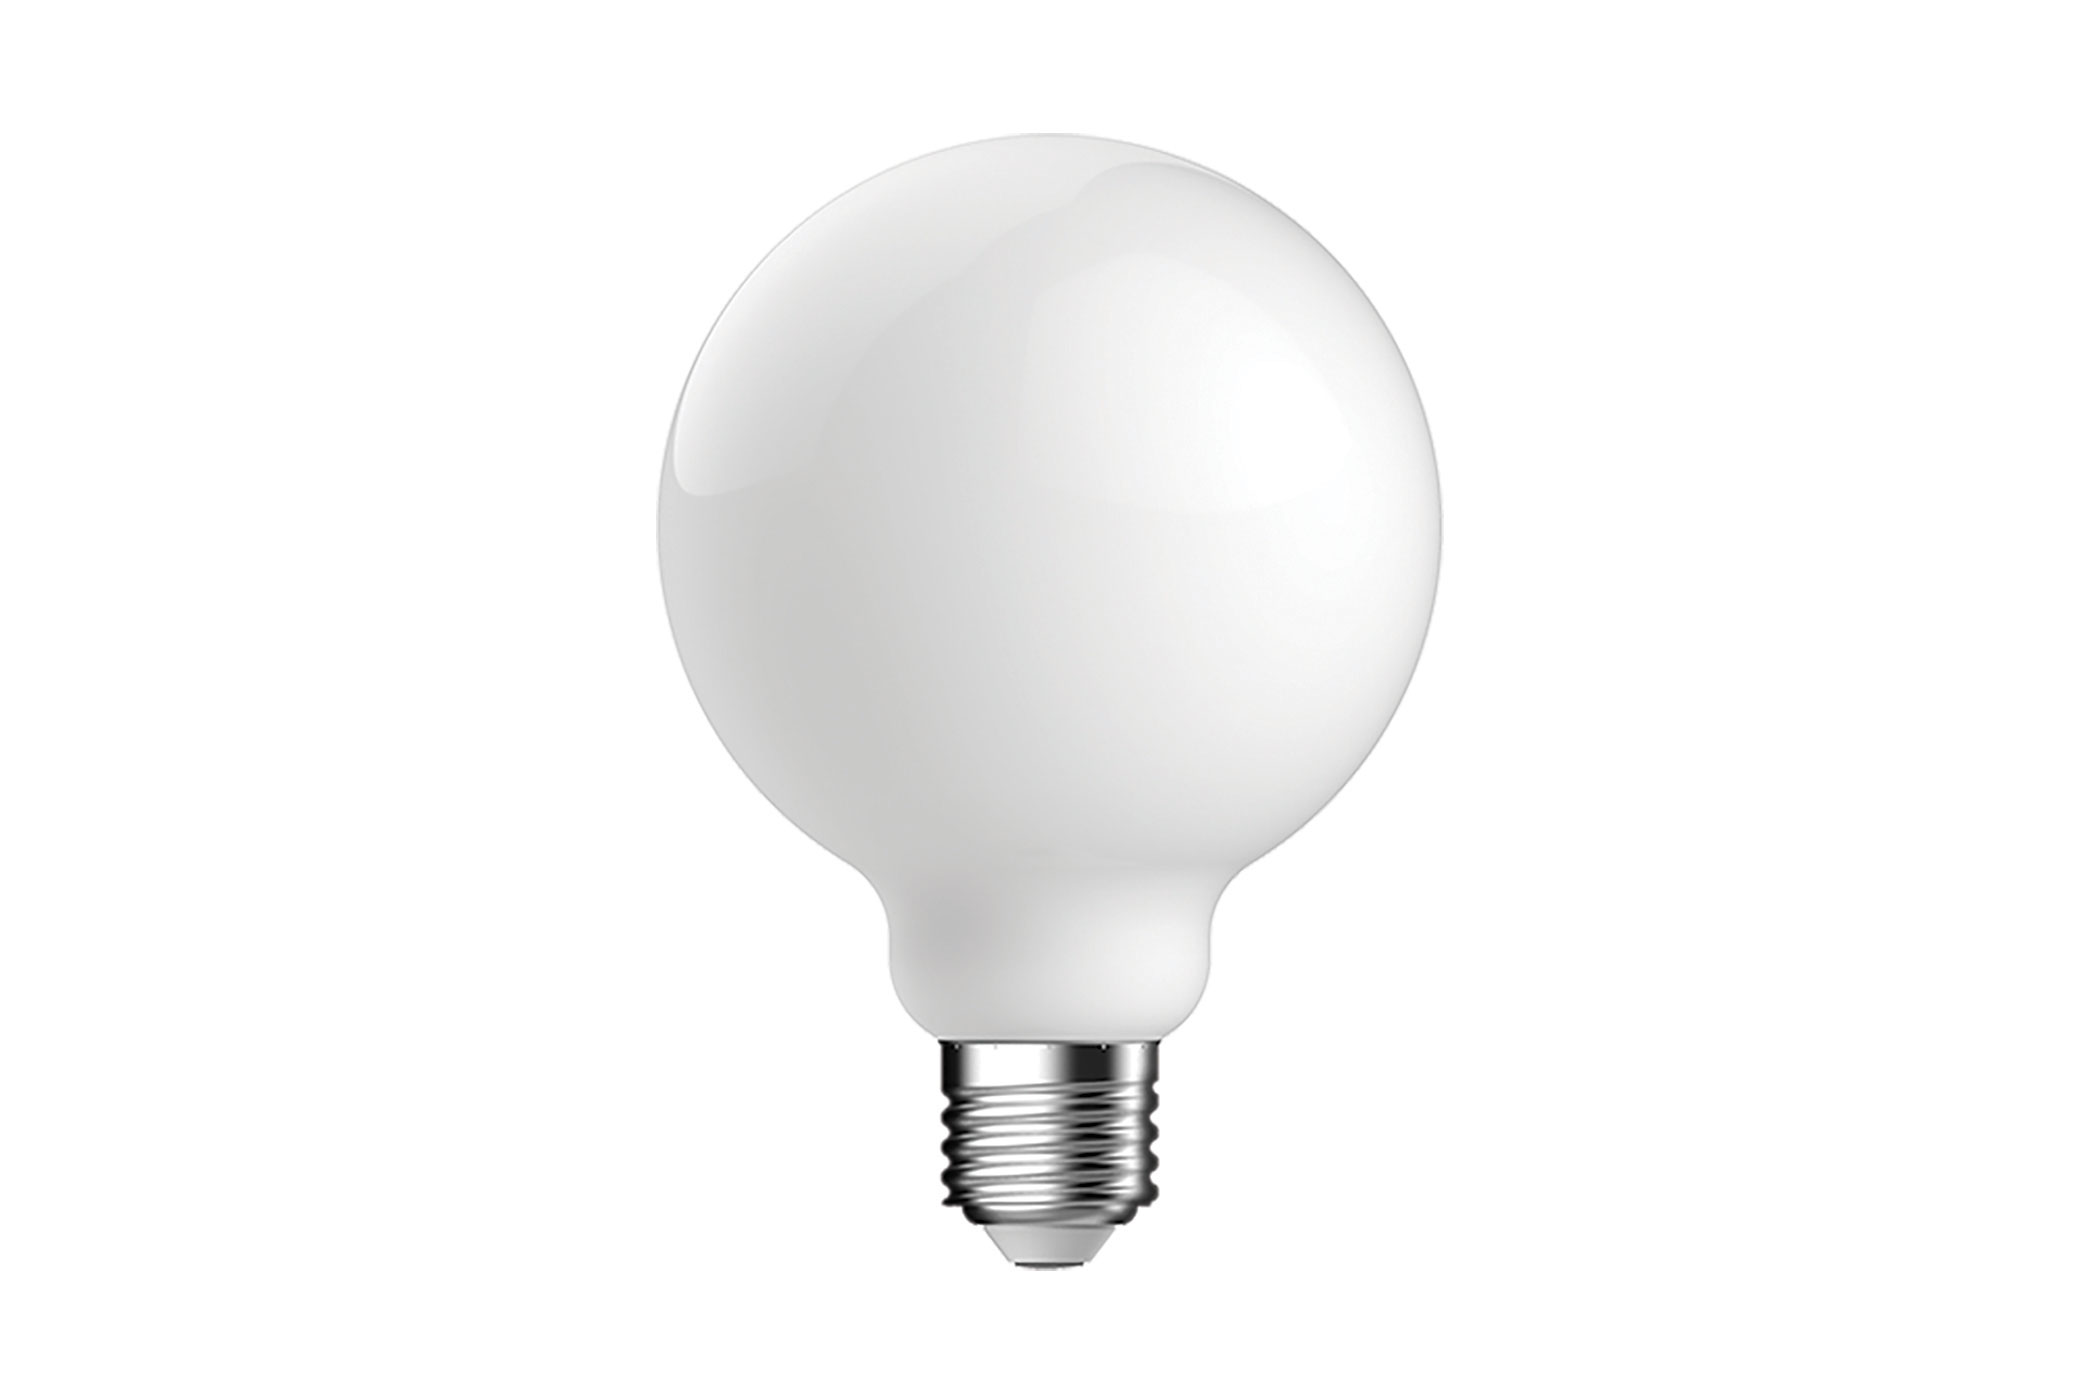 White lightbulb. Image by Megaman.